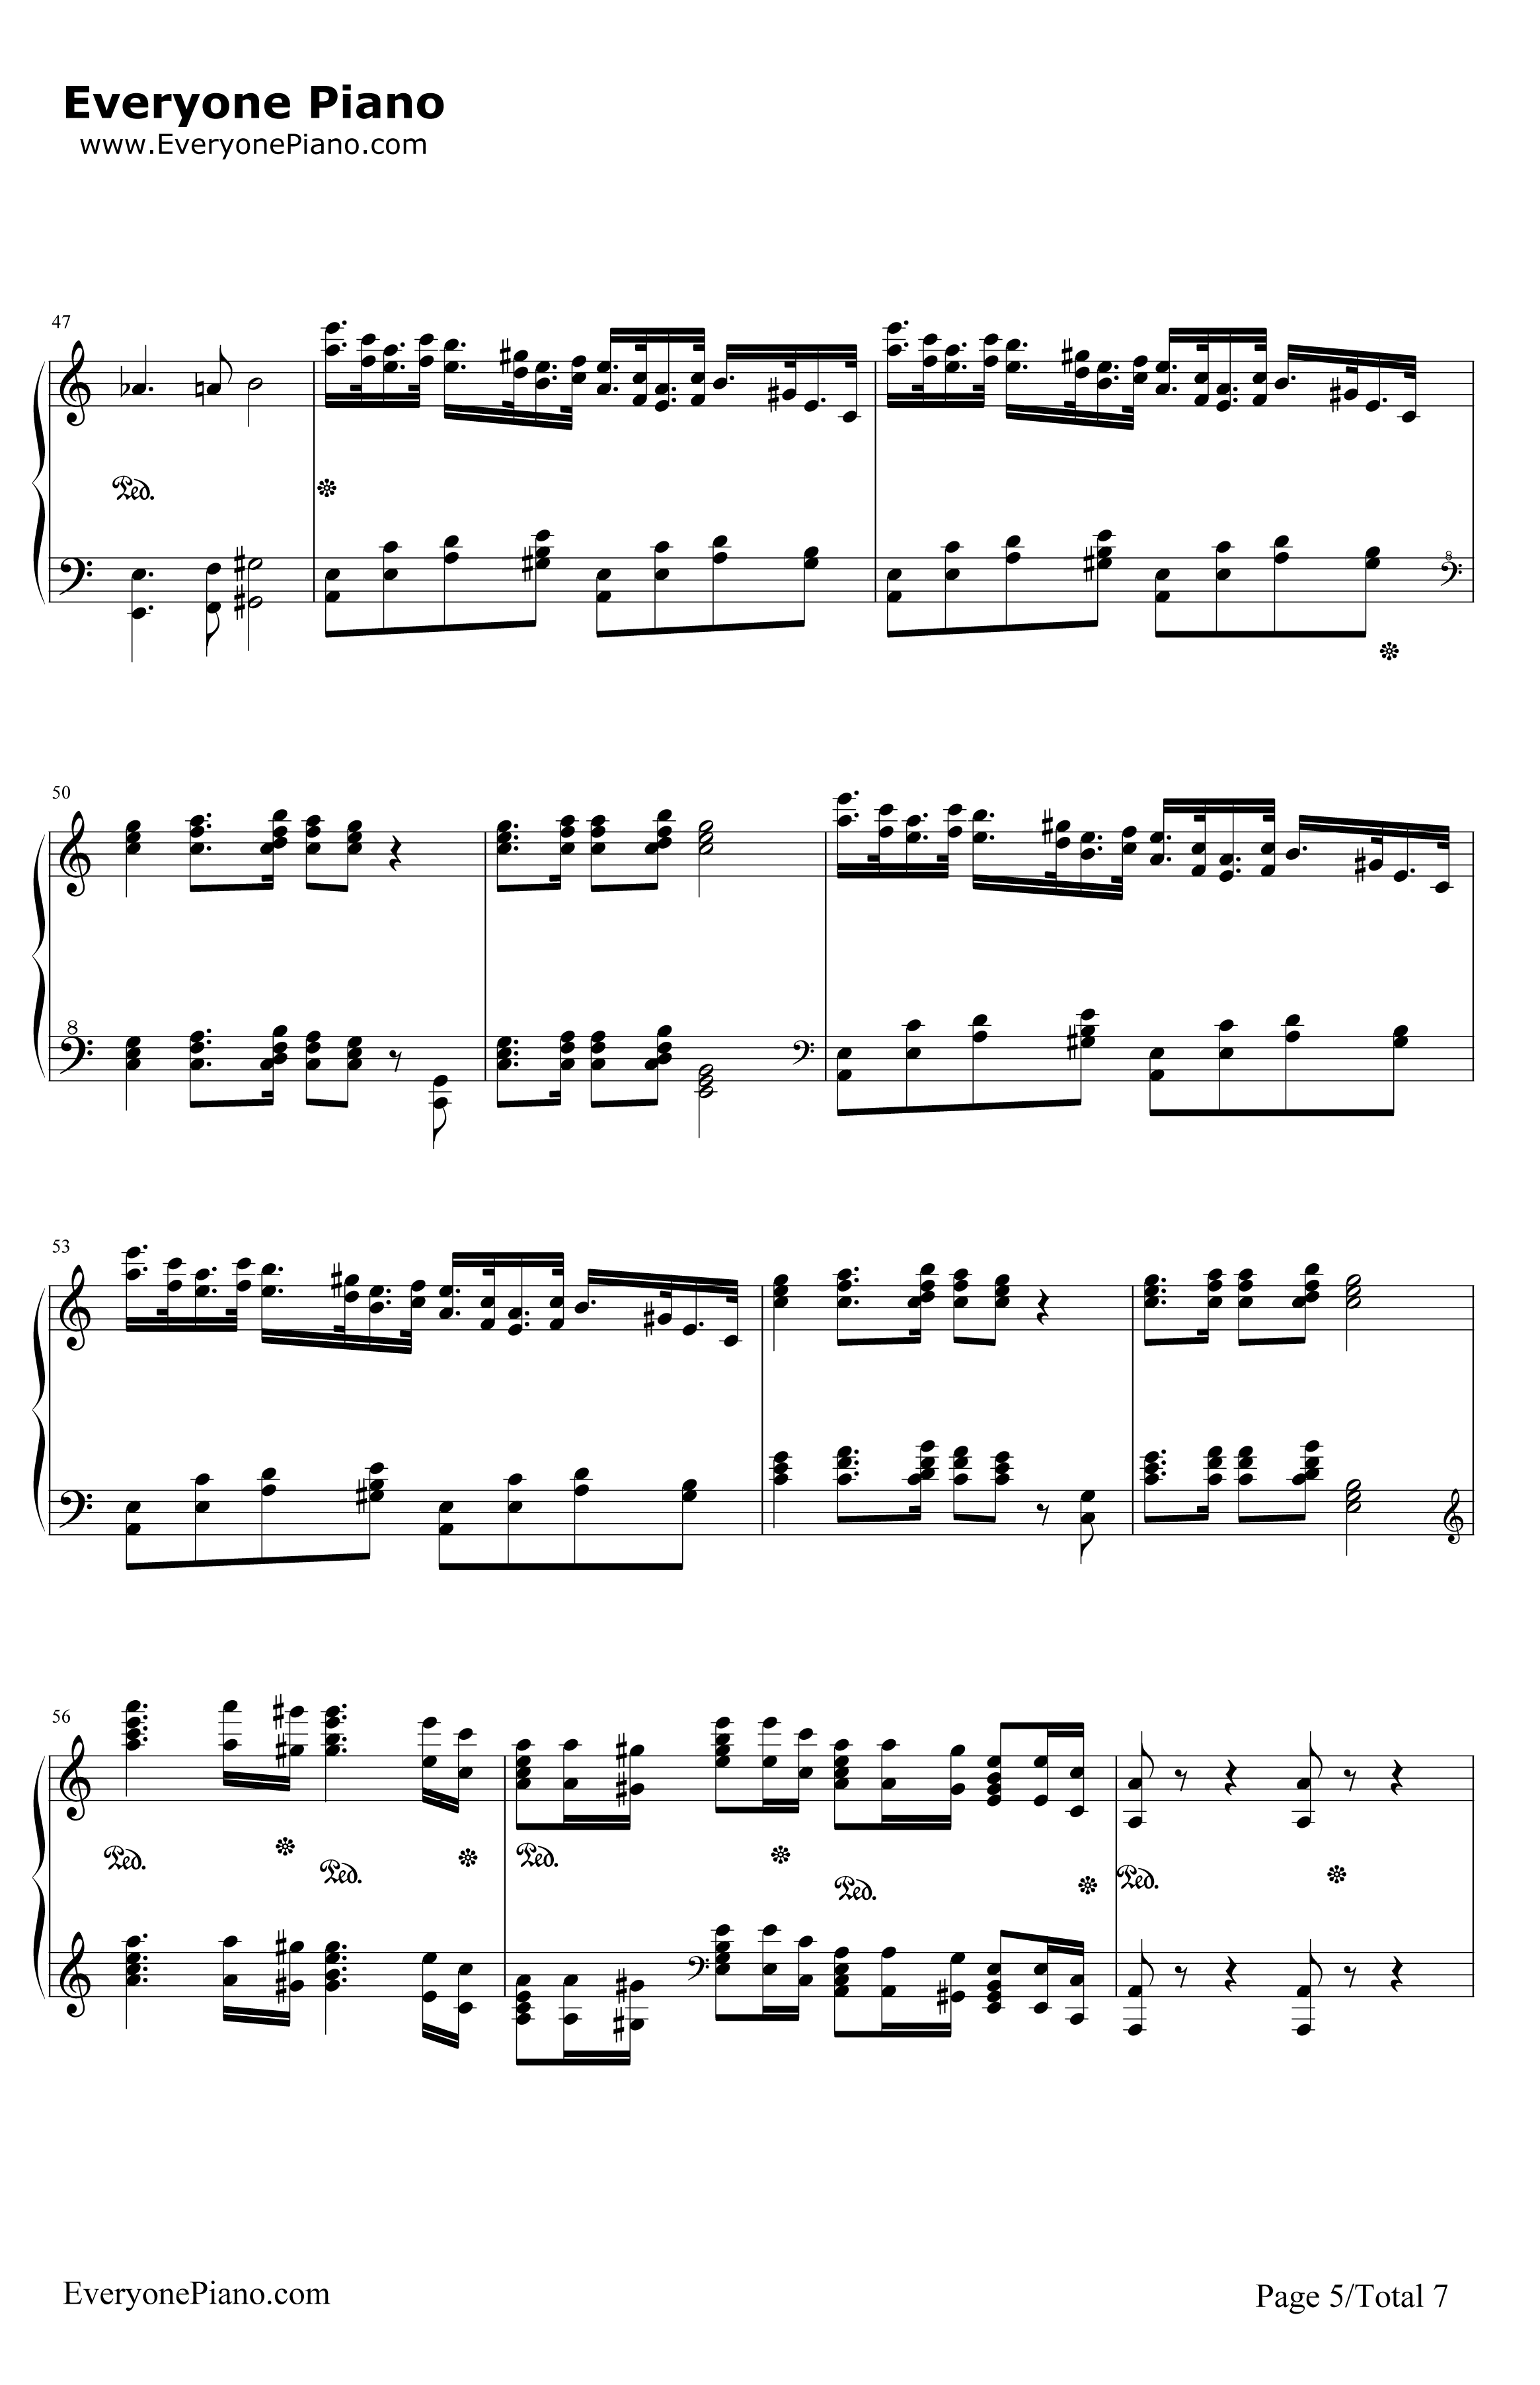 格里格钢琴变奏曲钢琴谱-马克西姆-格里格钢琴变奏曲5